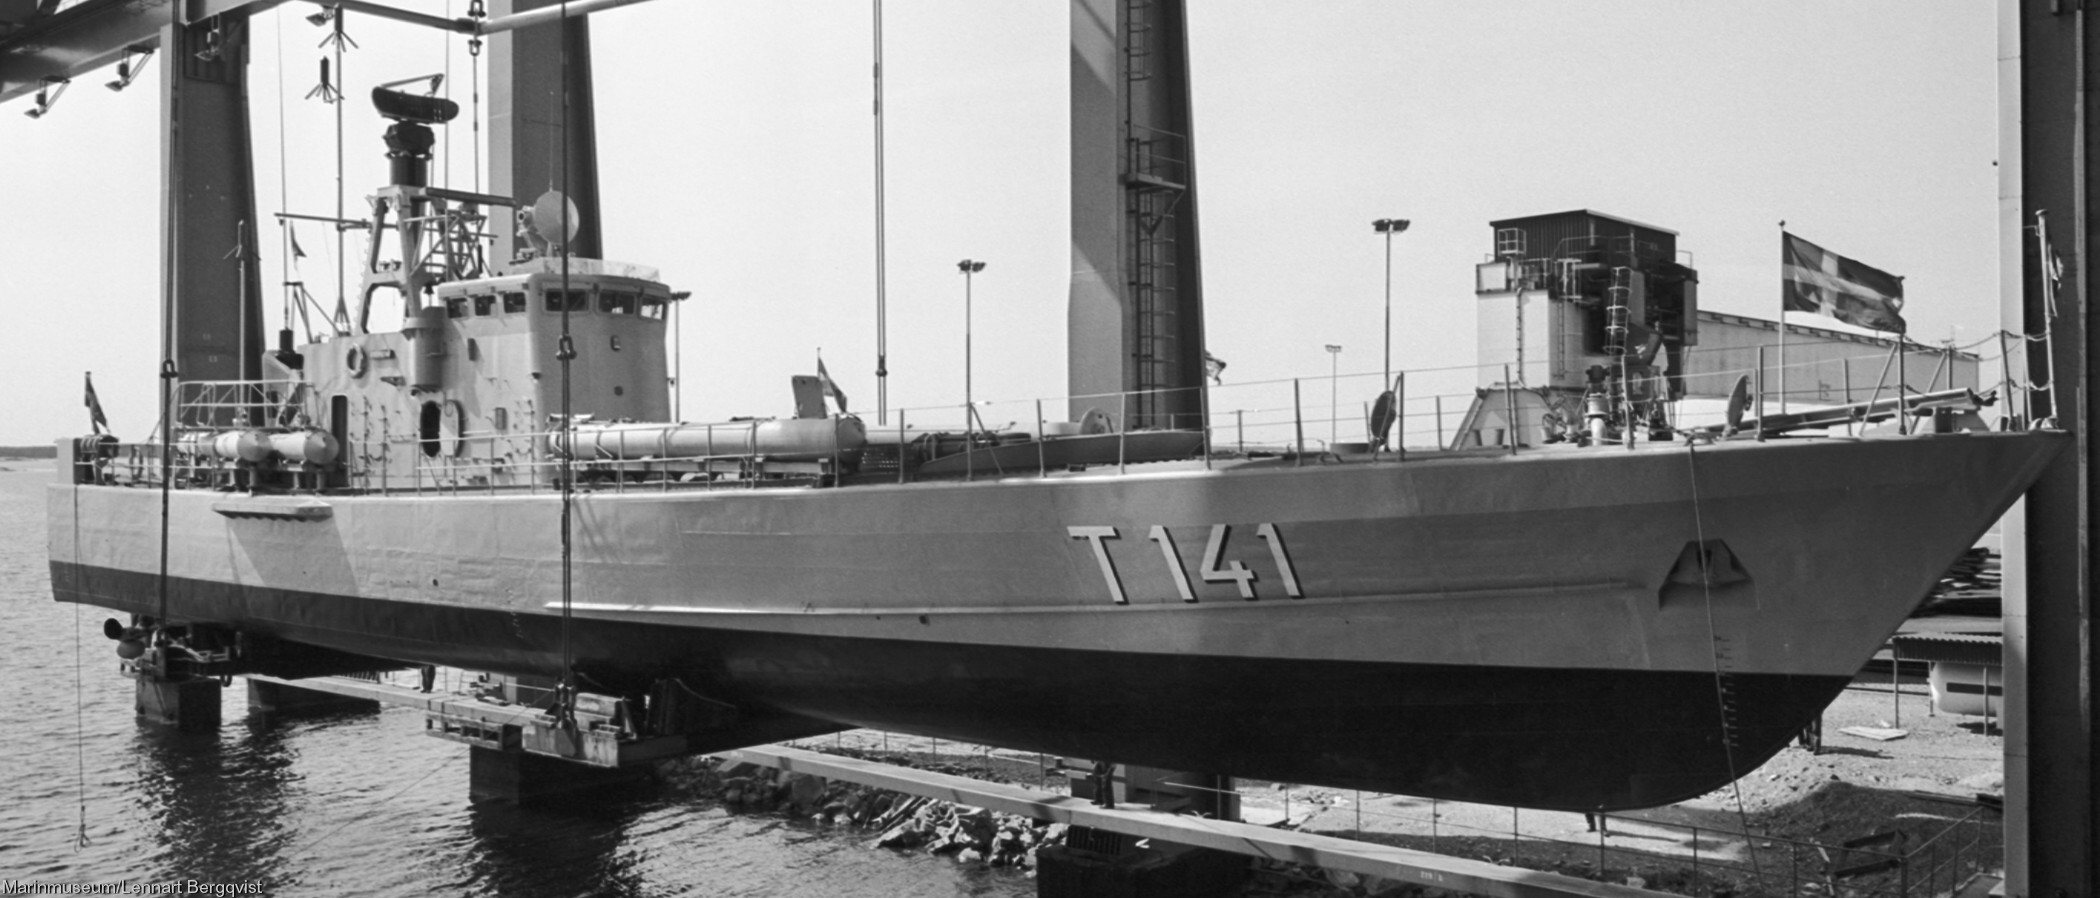 t141 strömstad hswms hms norrköping class fast attack craft torpedo missile patrol boat swedish navy svenska marinen 02